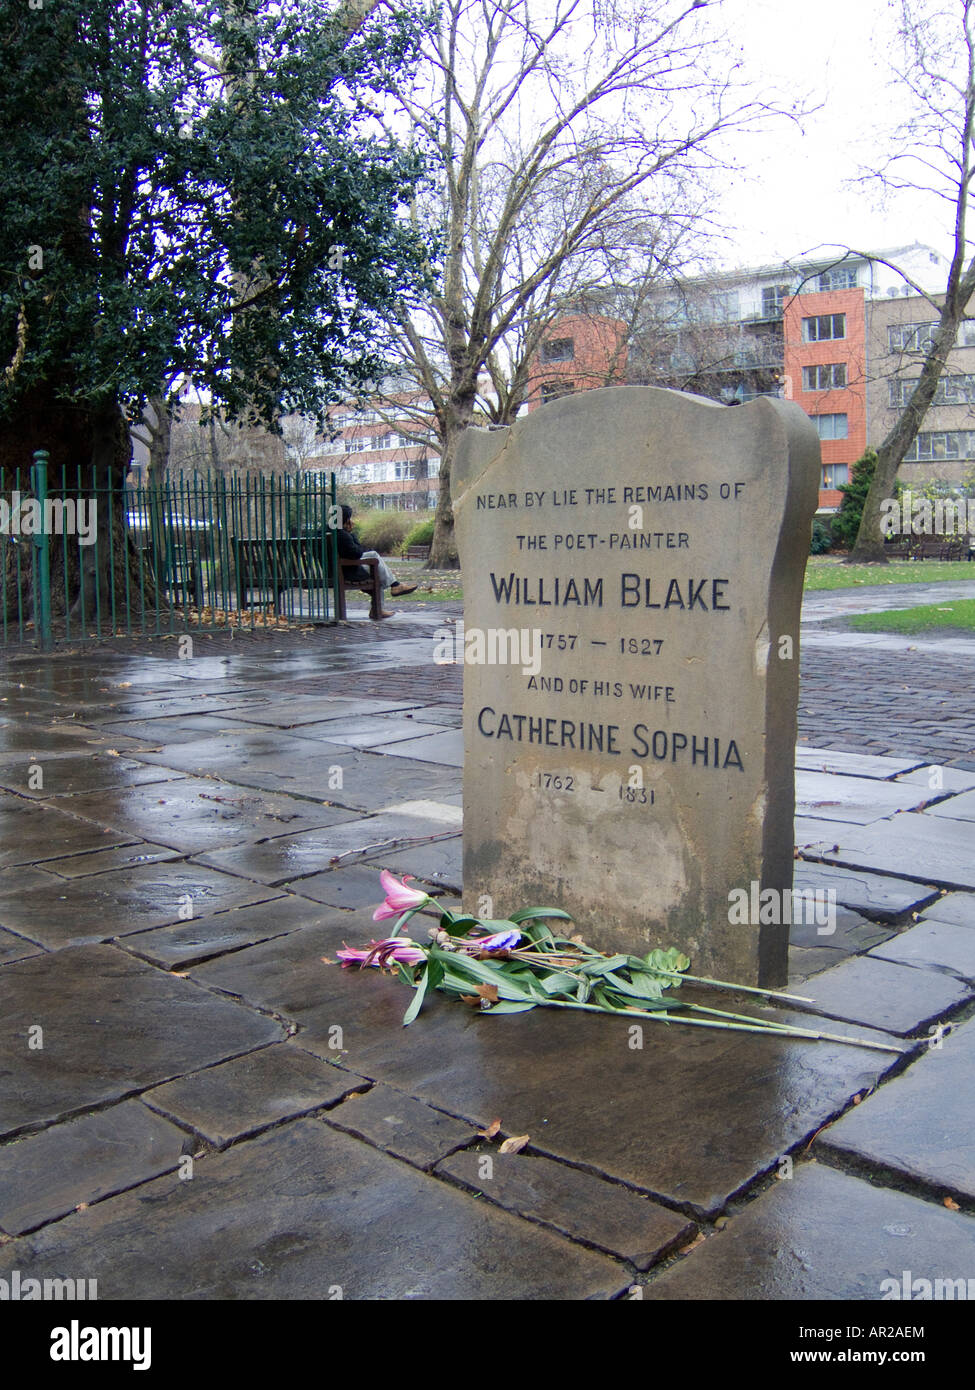 The grave of William Blake & Catherine Sophia in London Stock Photo